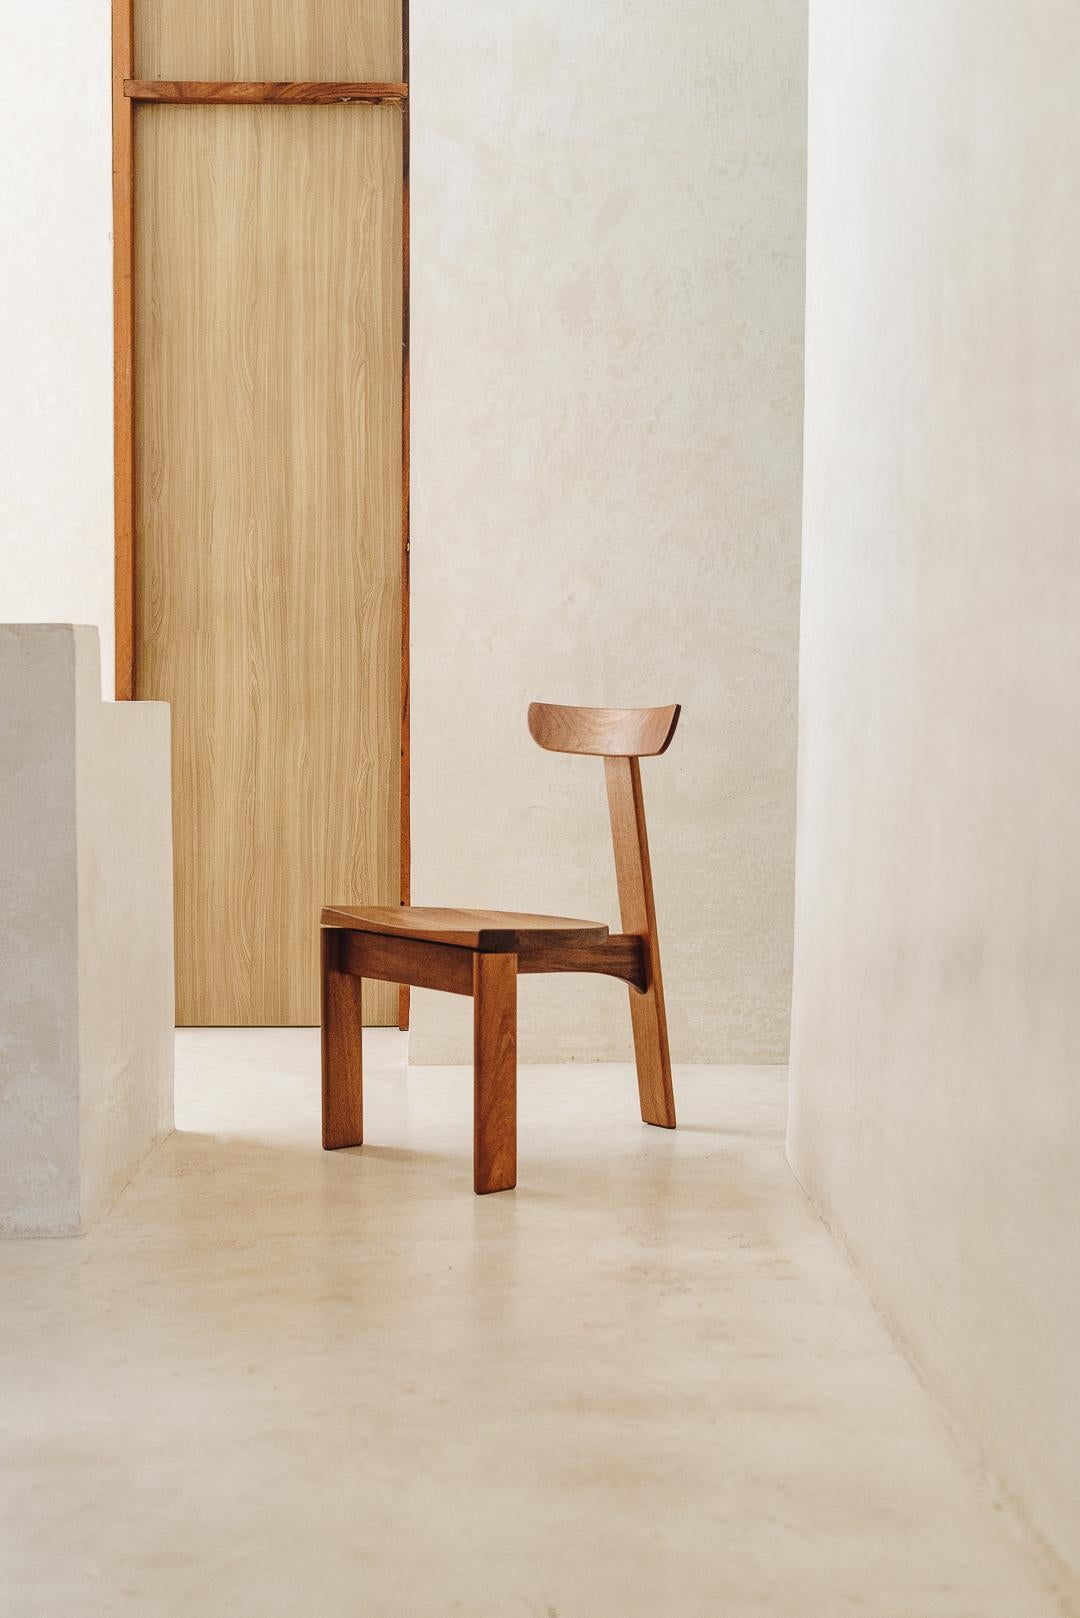 Der Lumi-Stuhl ist ein sehr praktisches Möbelstück, das eine robuste, aber dennoch zarte Struktur aufweist. Der Sitz liegt leicht über dem Bodenniveau. Die Rückenlehne des Stuhls ist breit und bequem. Seine Details sind aus jedem Blickwinkel zu